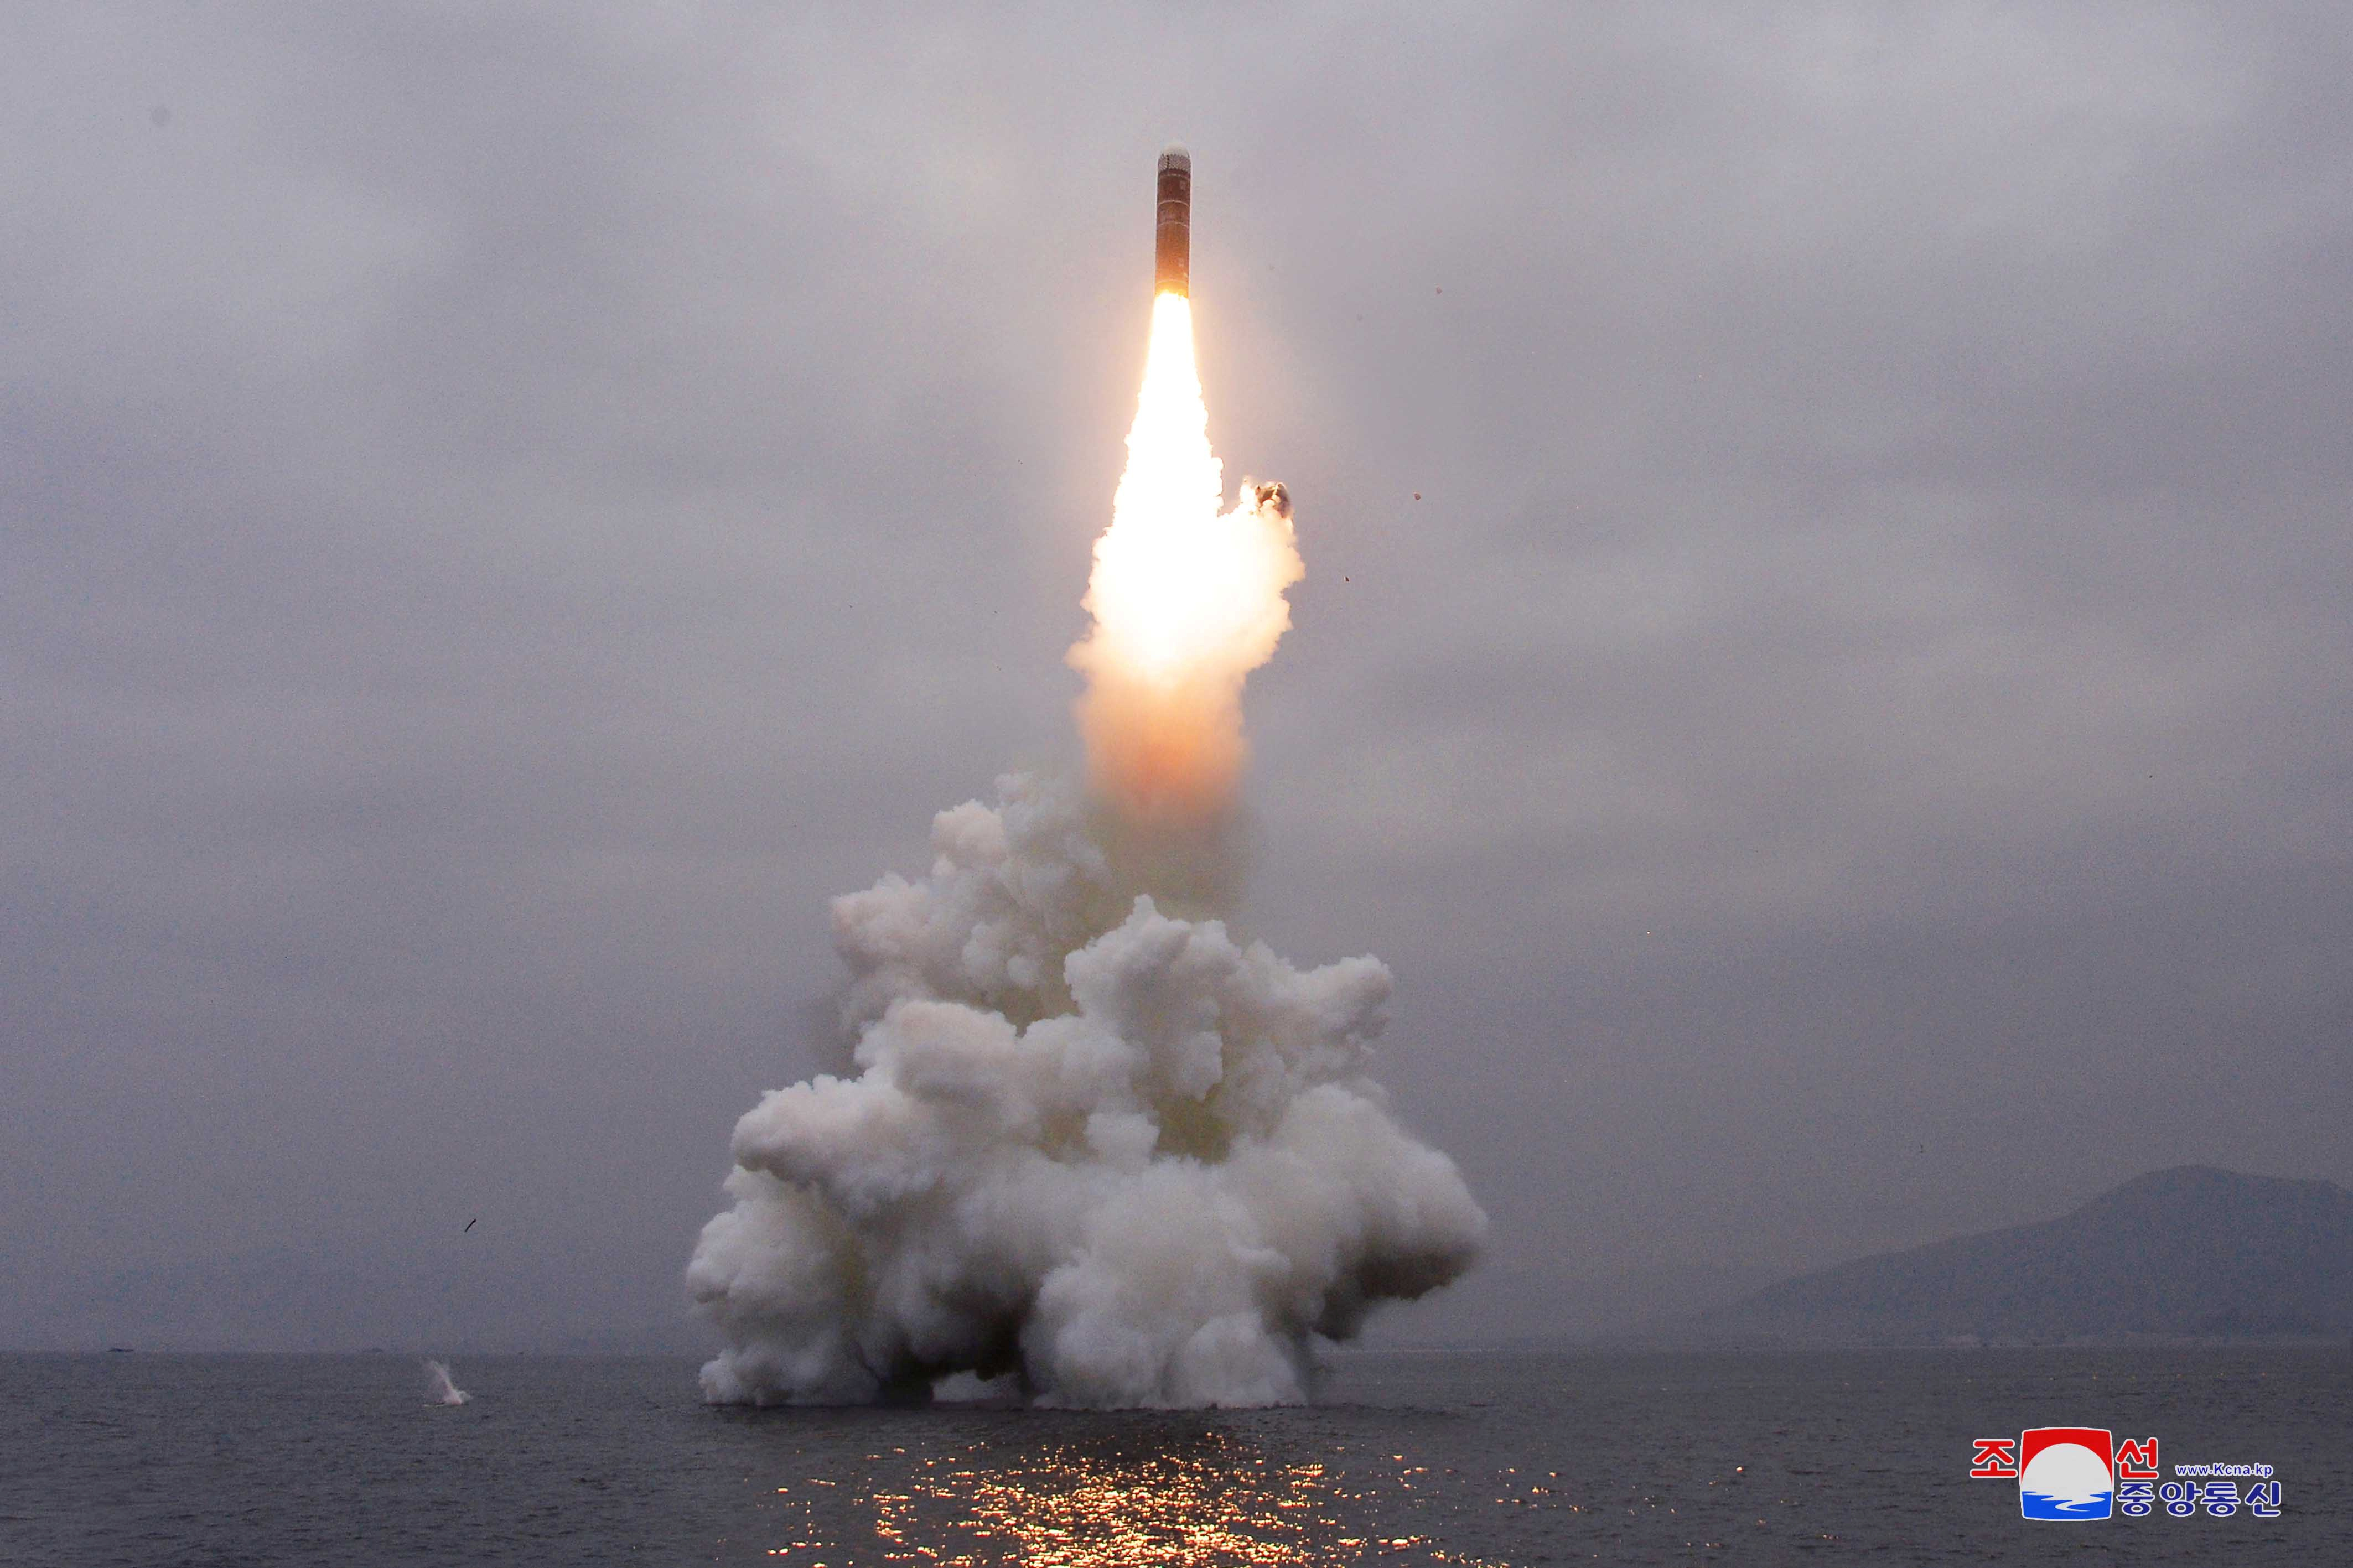 EEUU acusó a Corea del Norte de preparar nuevo sistema de misiles intercontinentales